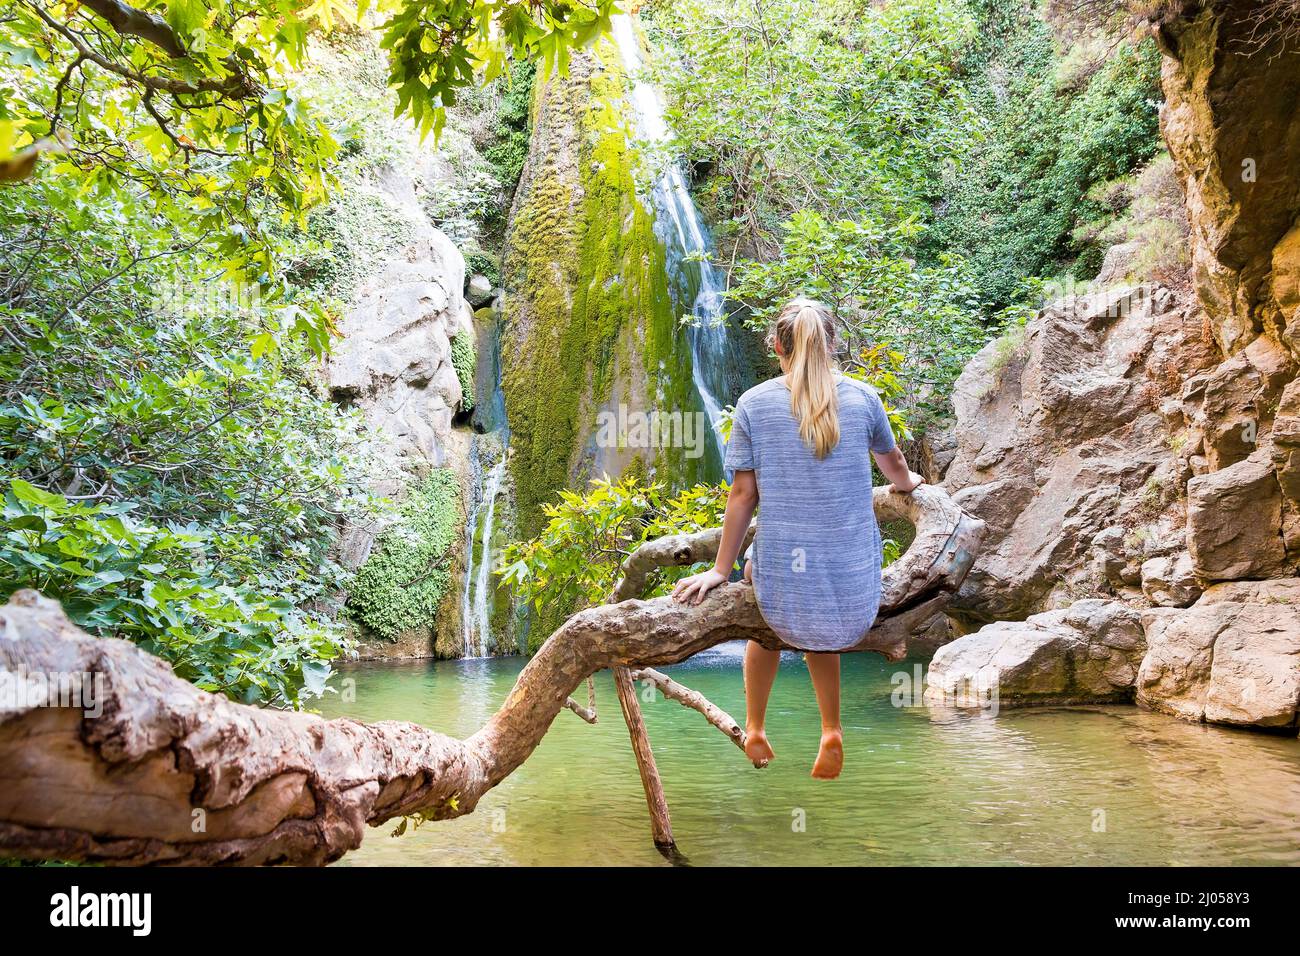 La cascata Richtis Gorge si trova in un parco protetto dello stato vicino a Exo Mouliana, Sitia, Creta orientale. Il percorso escursionistico è di circa 4 km di lunghezza di difficoltà da facile a moderata. Foto Stock